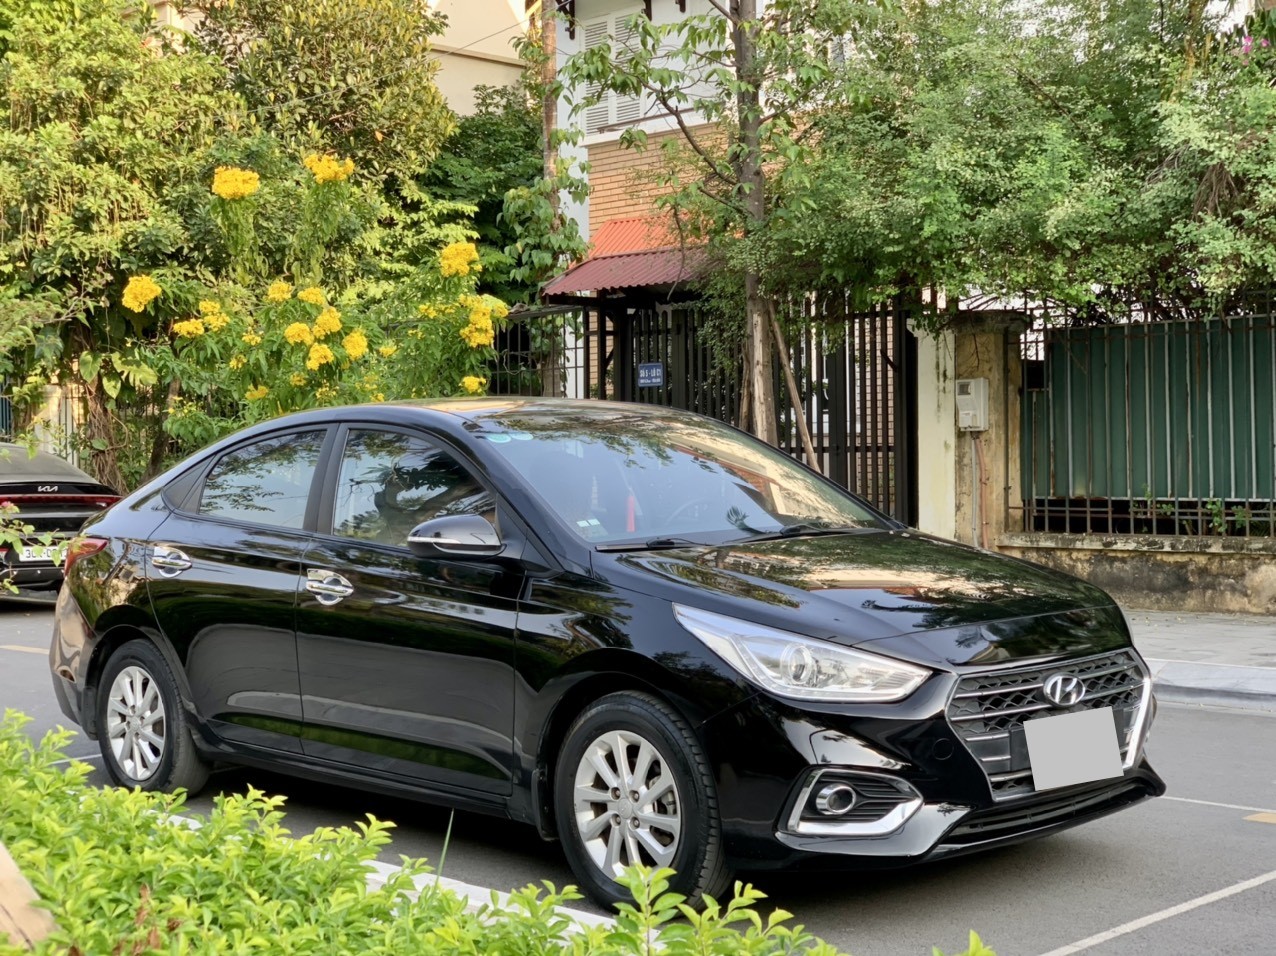 Bán ô tô Hyundai Accent sản xuất năm 2019 màu đen còn mới Tại Hà Nội   RaoXYZ